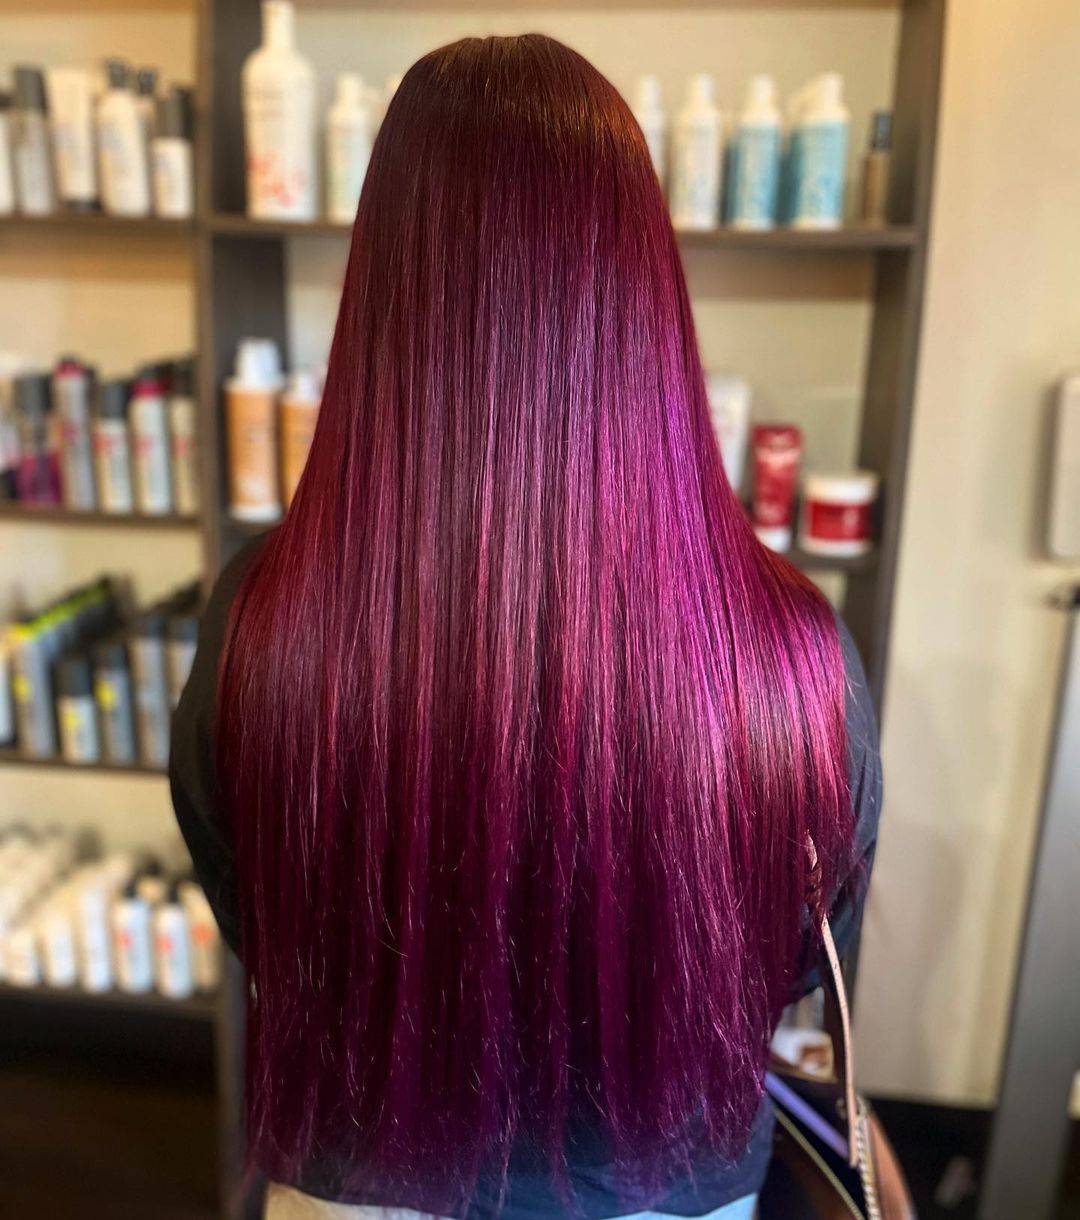 Burgundy hair color 219 burgundy hair color | burgundy hair color for women | burgundy hair color highlights Burgundy Hair Color